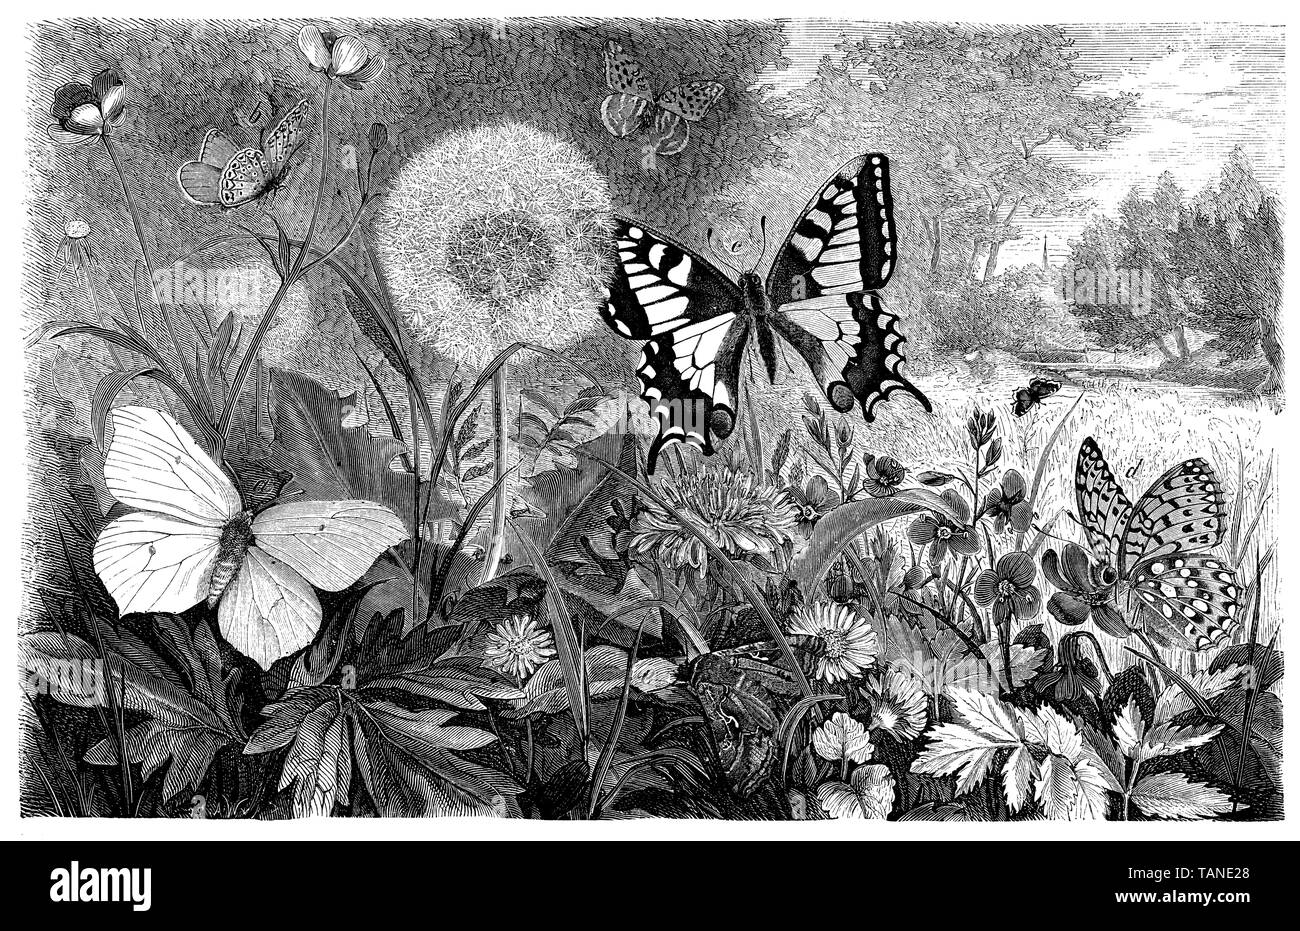 Ancien Monde, swallowtail Papilio machaon, zoologie, 1872 (livre) Banque D'Images